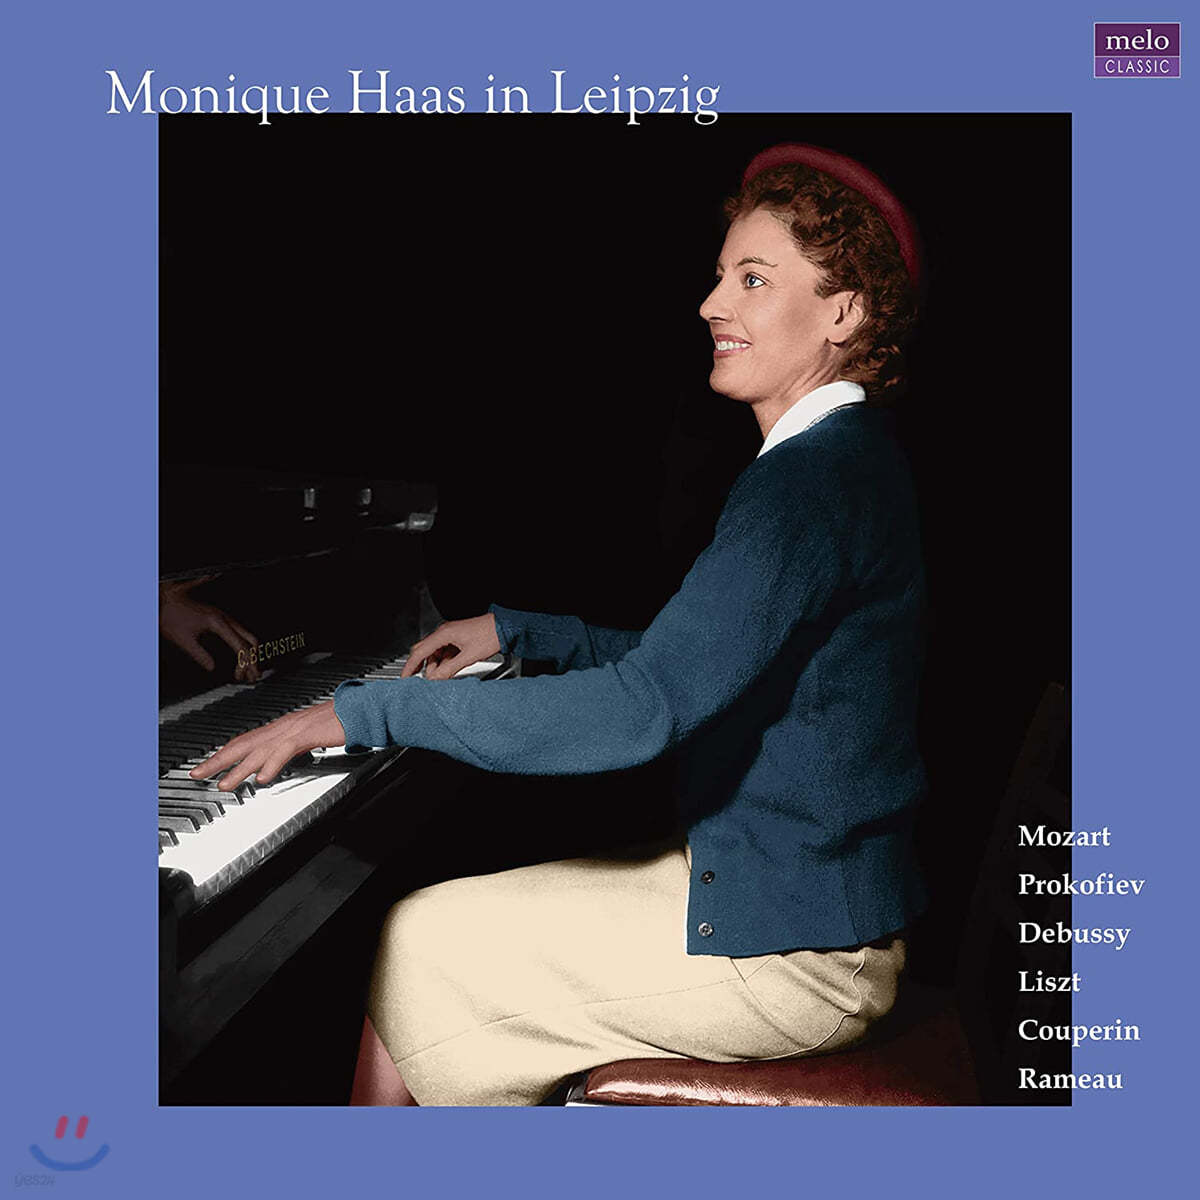 모니크 하스 1956년 라이프치히 피아노 리사이틀 (Monique Haas in Leipzig) [2LP] 